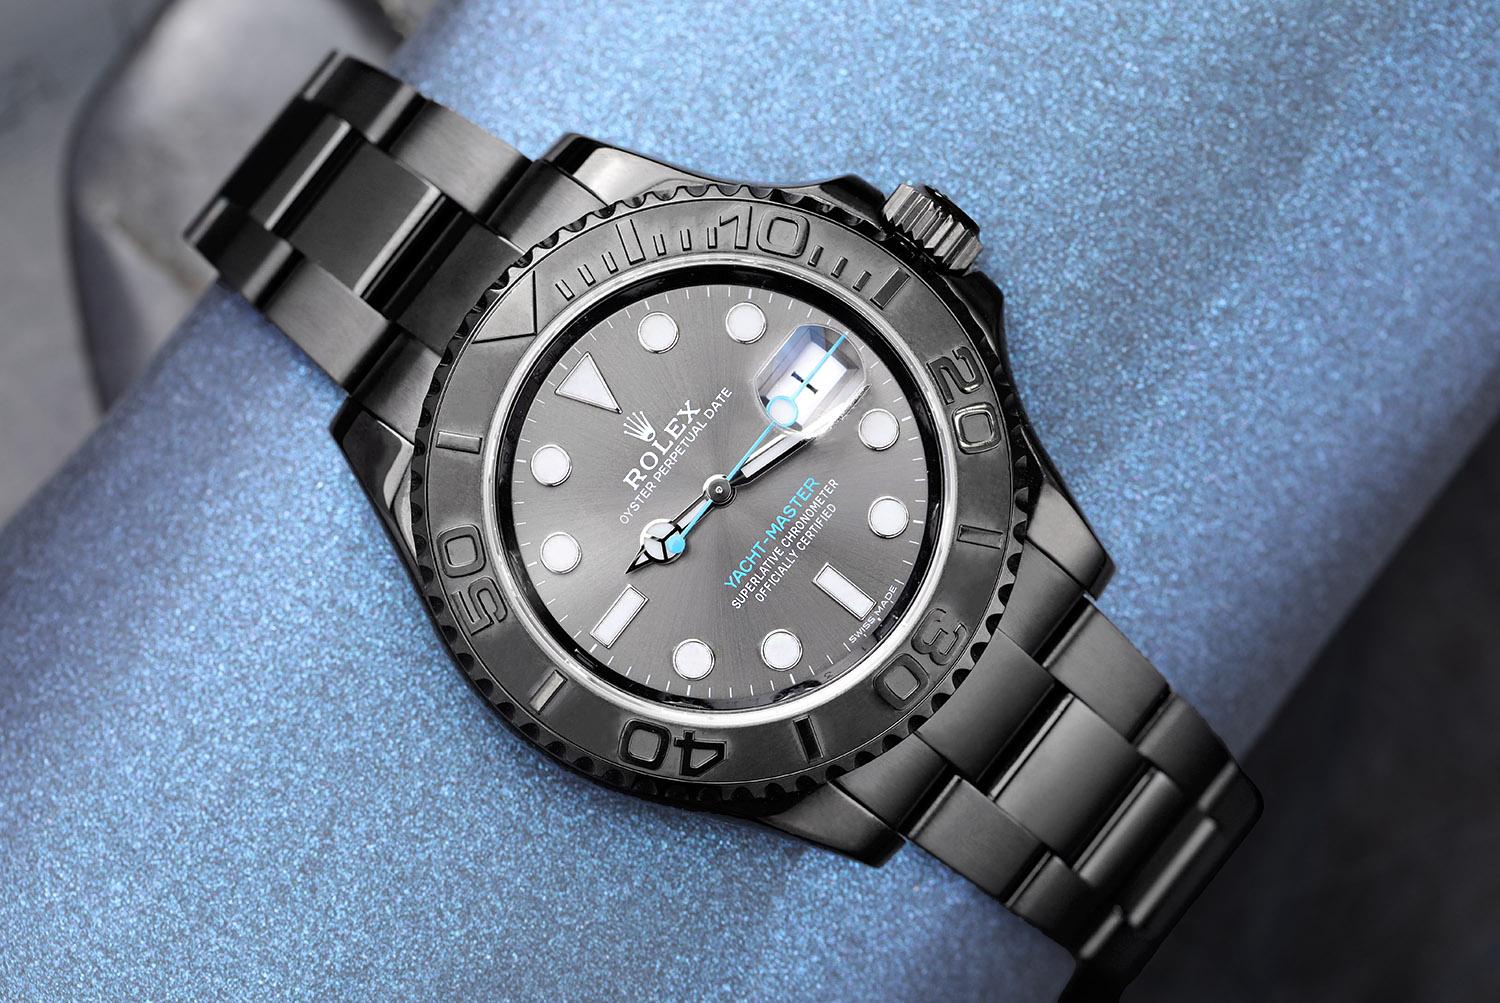 Montre Rolex Yacht-Master 40 mm en acier inoxydable revêtu de PVD/DLC et platine 116622. Cette montre a été polie professionnellement. Le Coates a été appliqué sur une montre propre. Après l'application du PVD/DLC, la montre n'a jamais été portée !